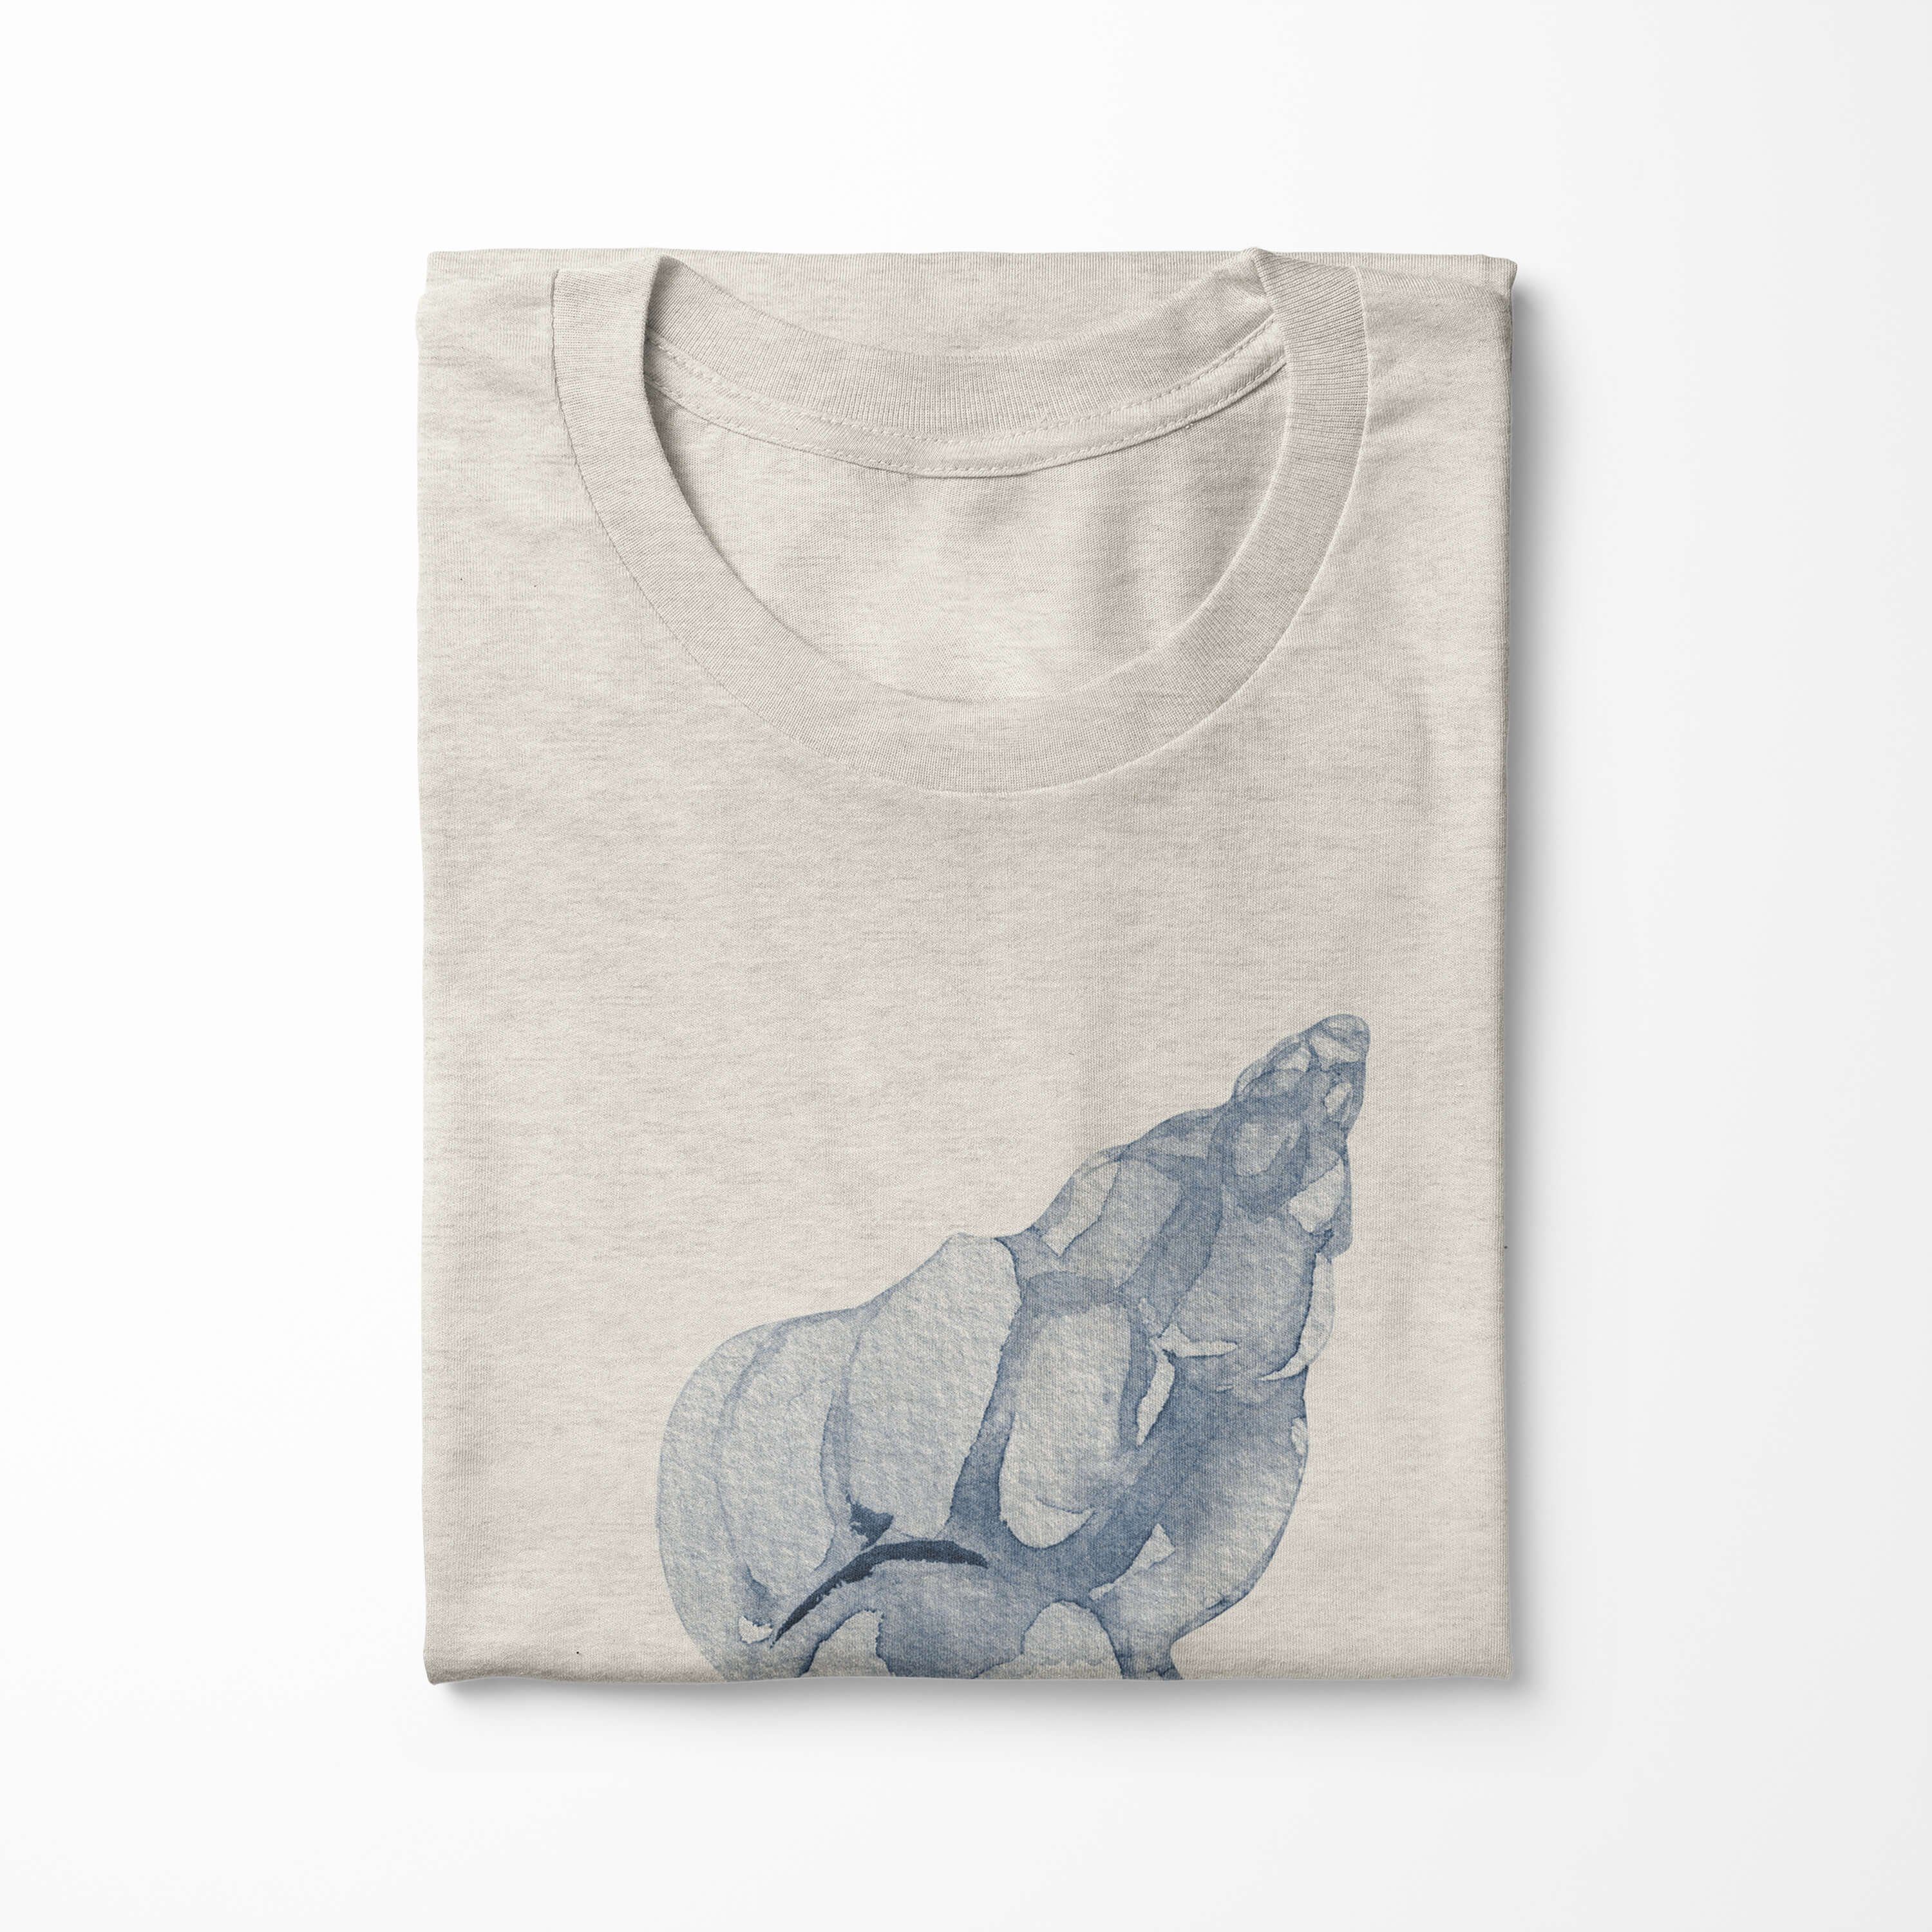 Muschel Ökomode Shirt (1-tlg) Wasserfarben gekämmte Bio-Baumwolle Sinus T-Shirt Herren Motiv T-Shirt 100% Art aus Nachhaltig